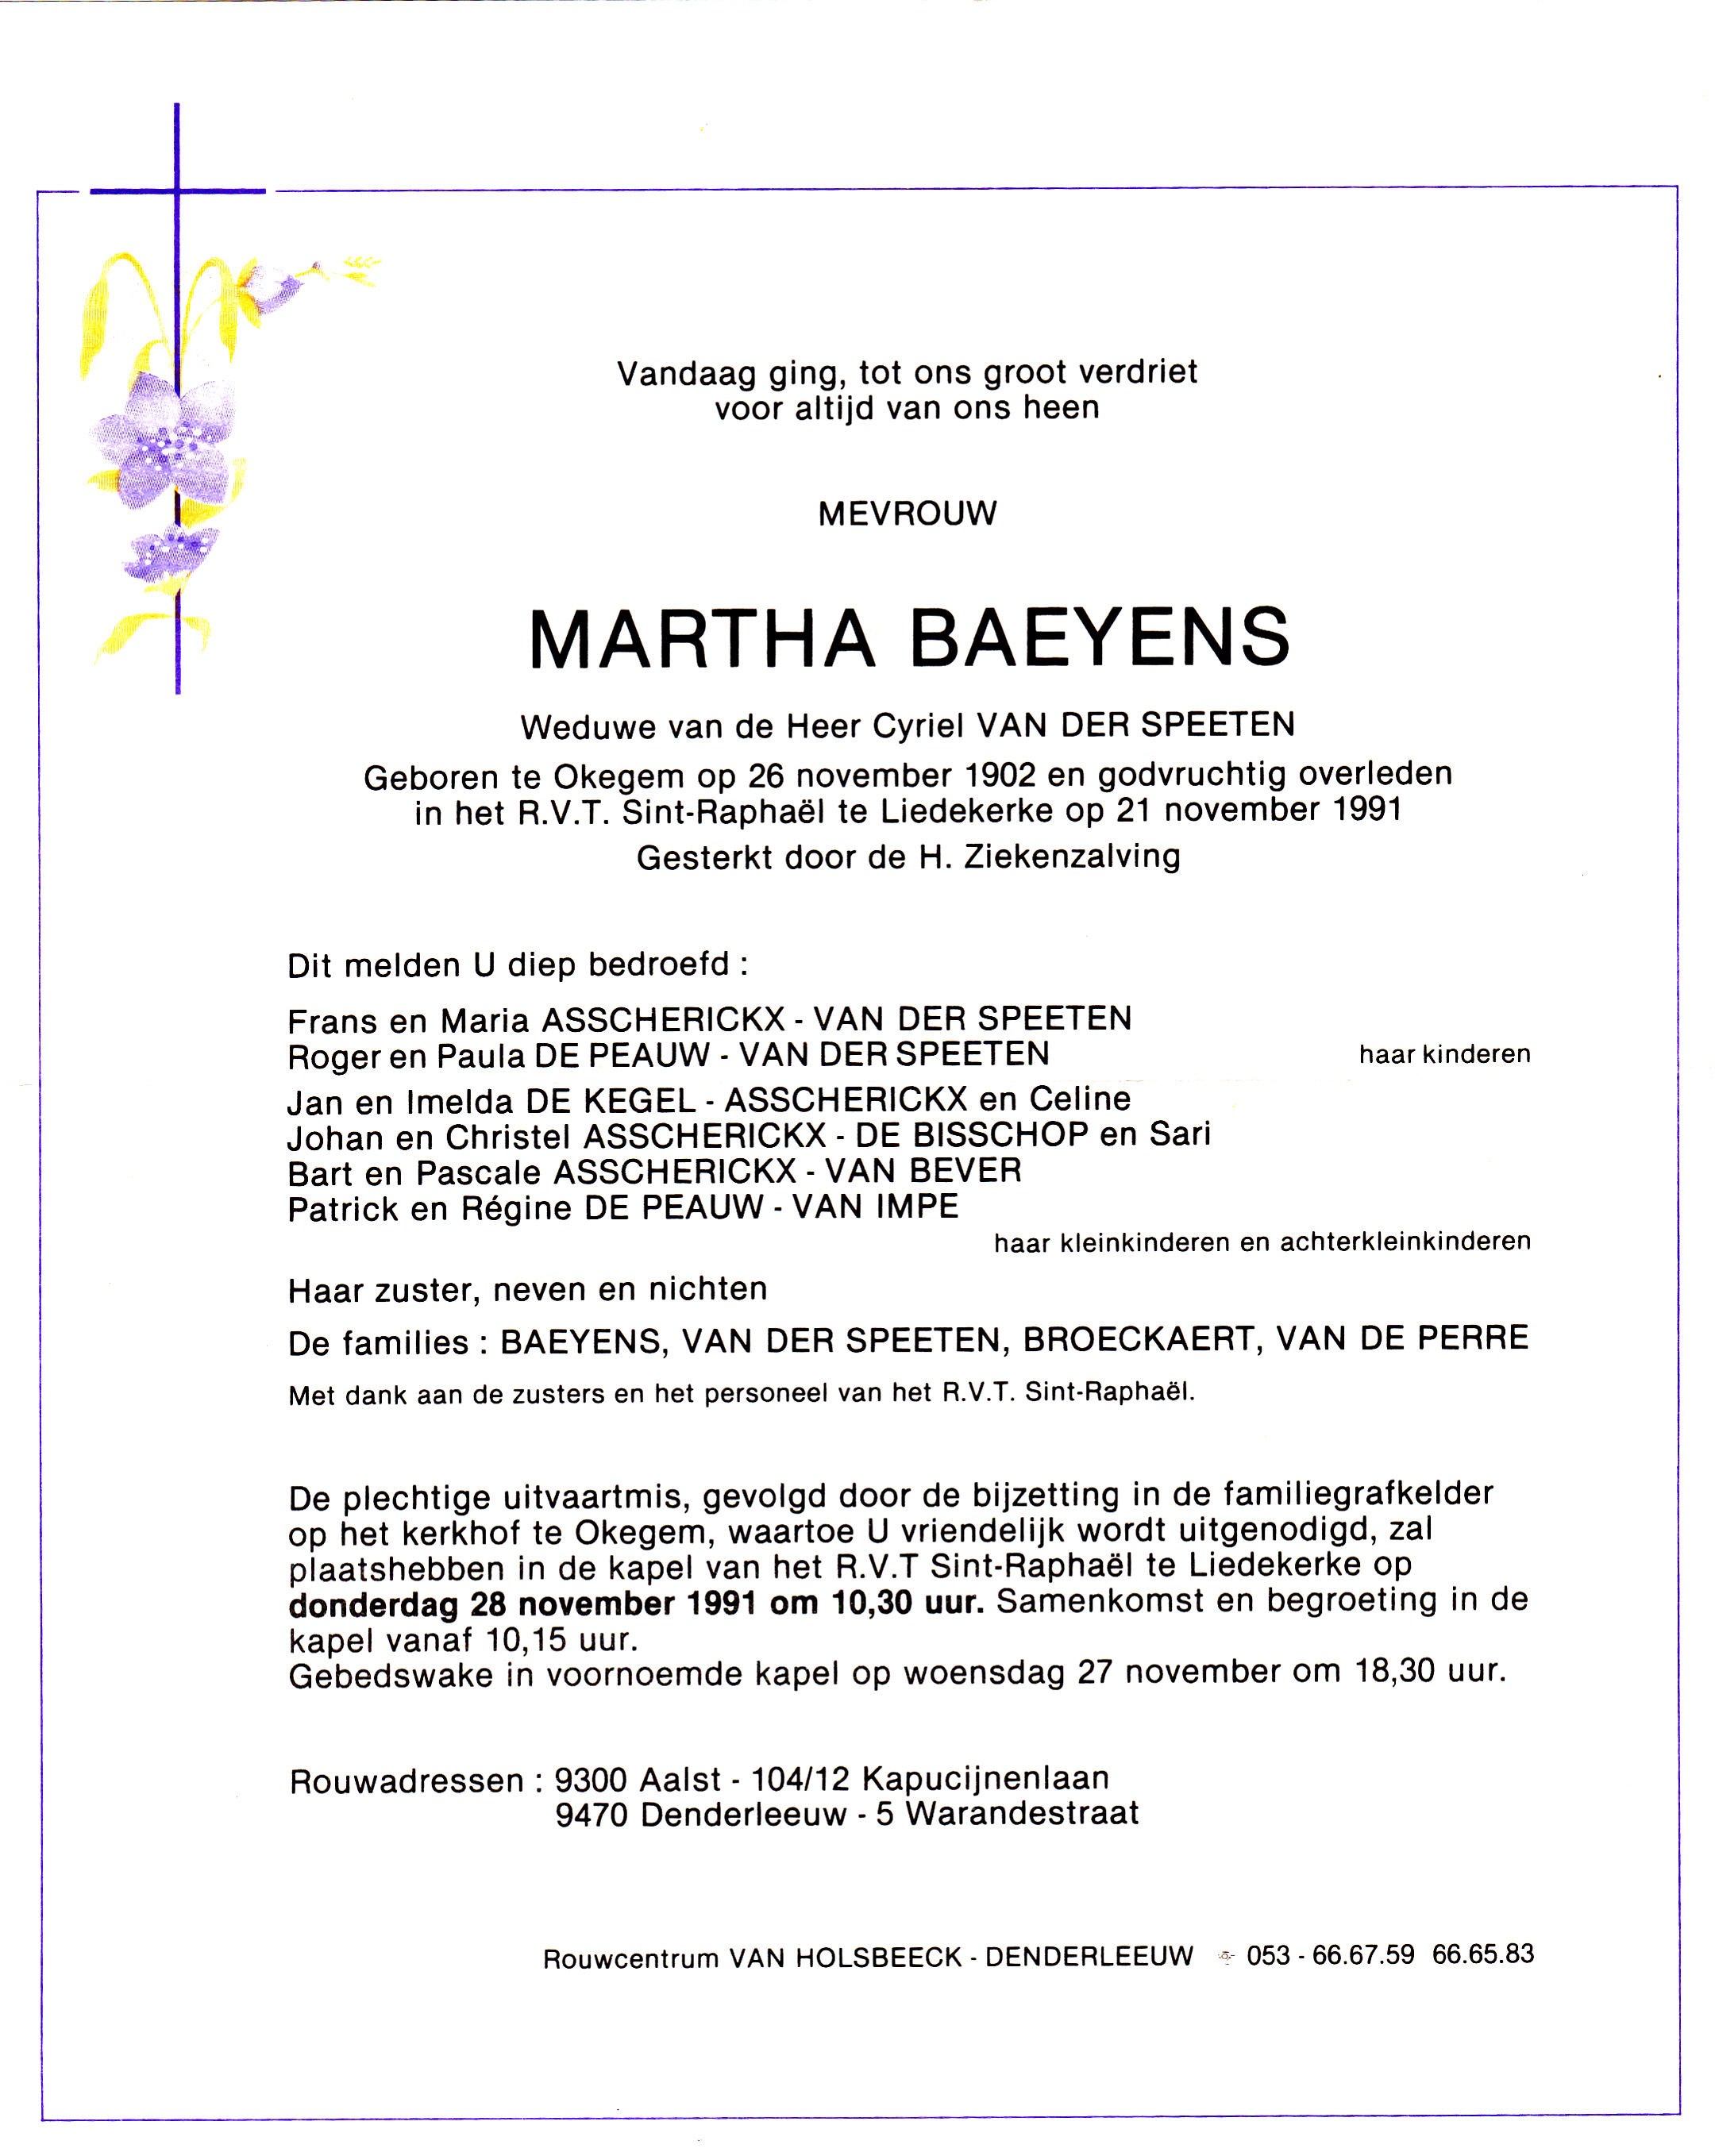 Baeyens Martha 